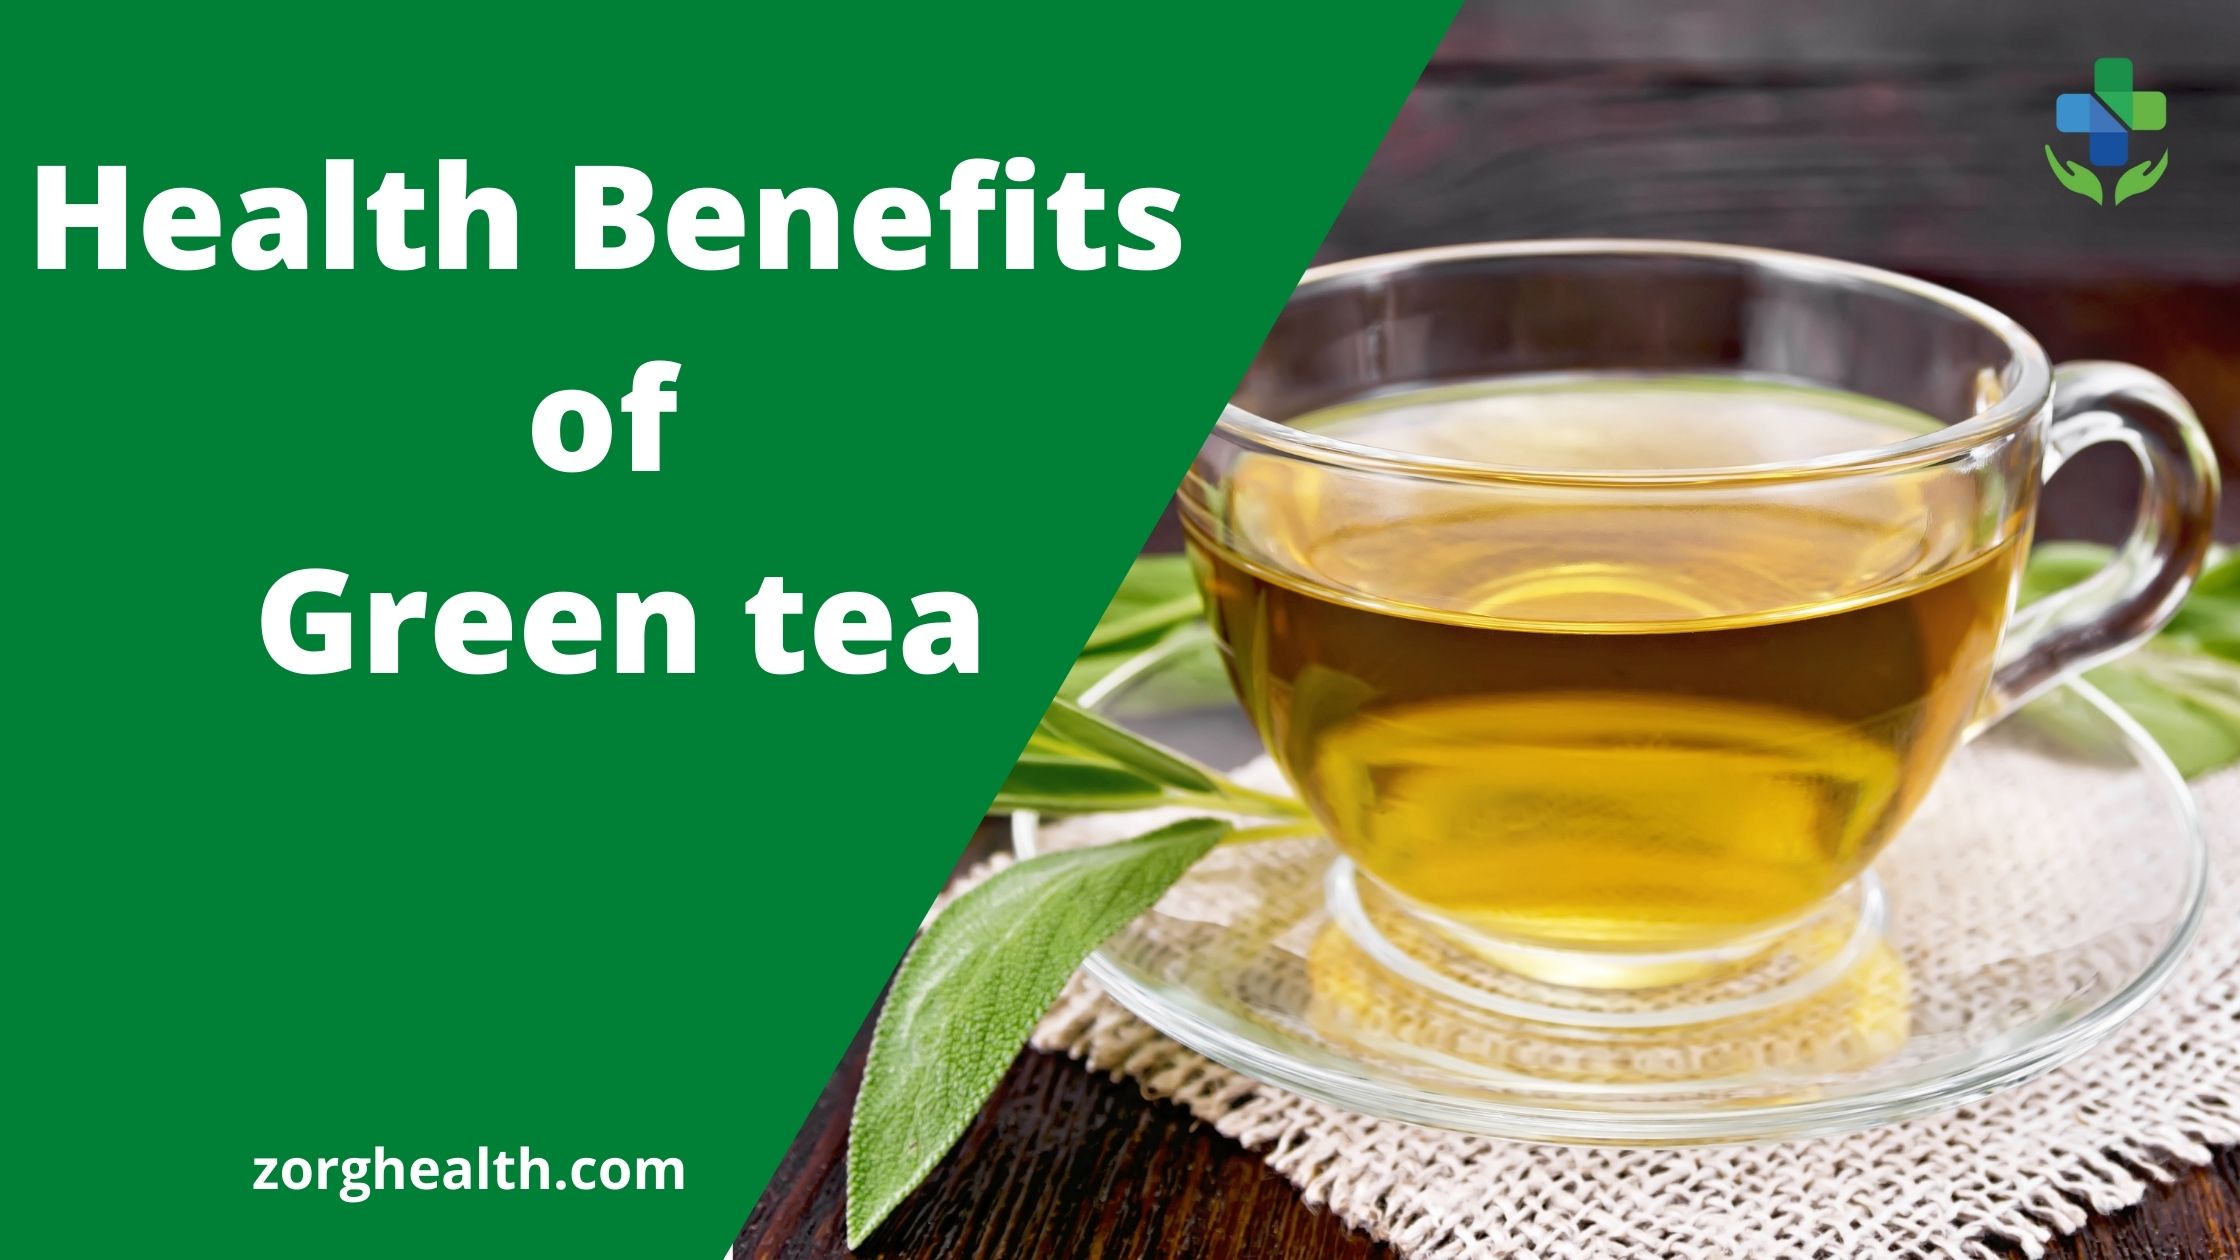 Health benefit of Green tea